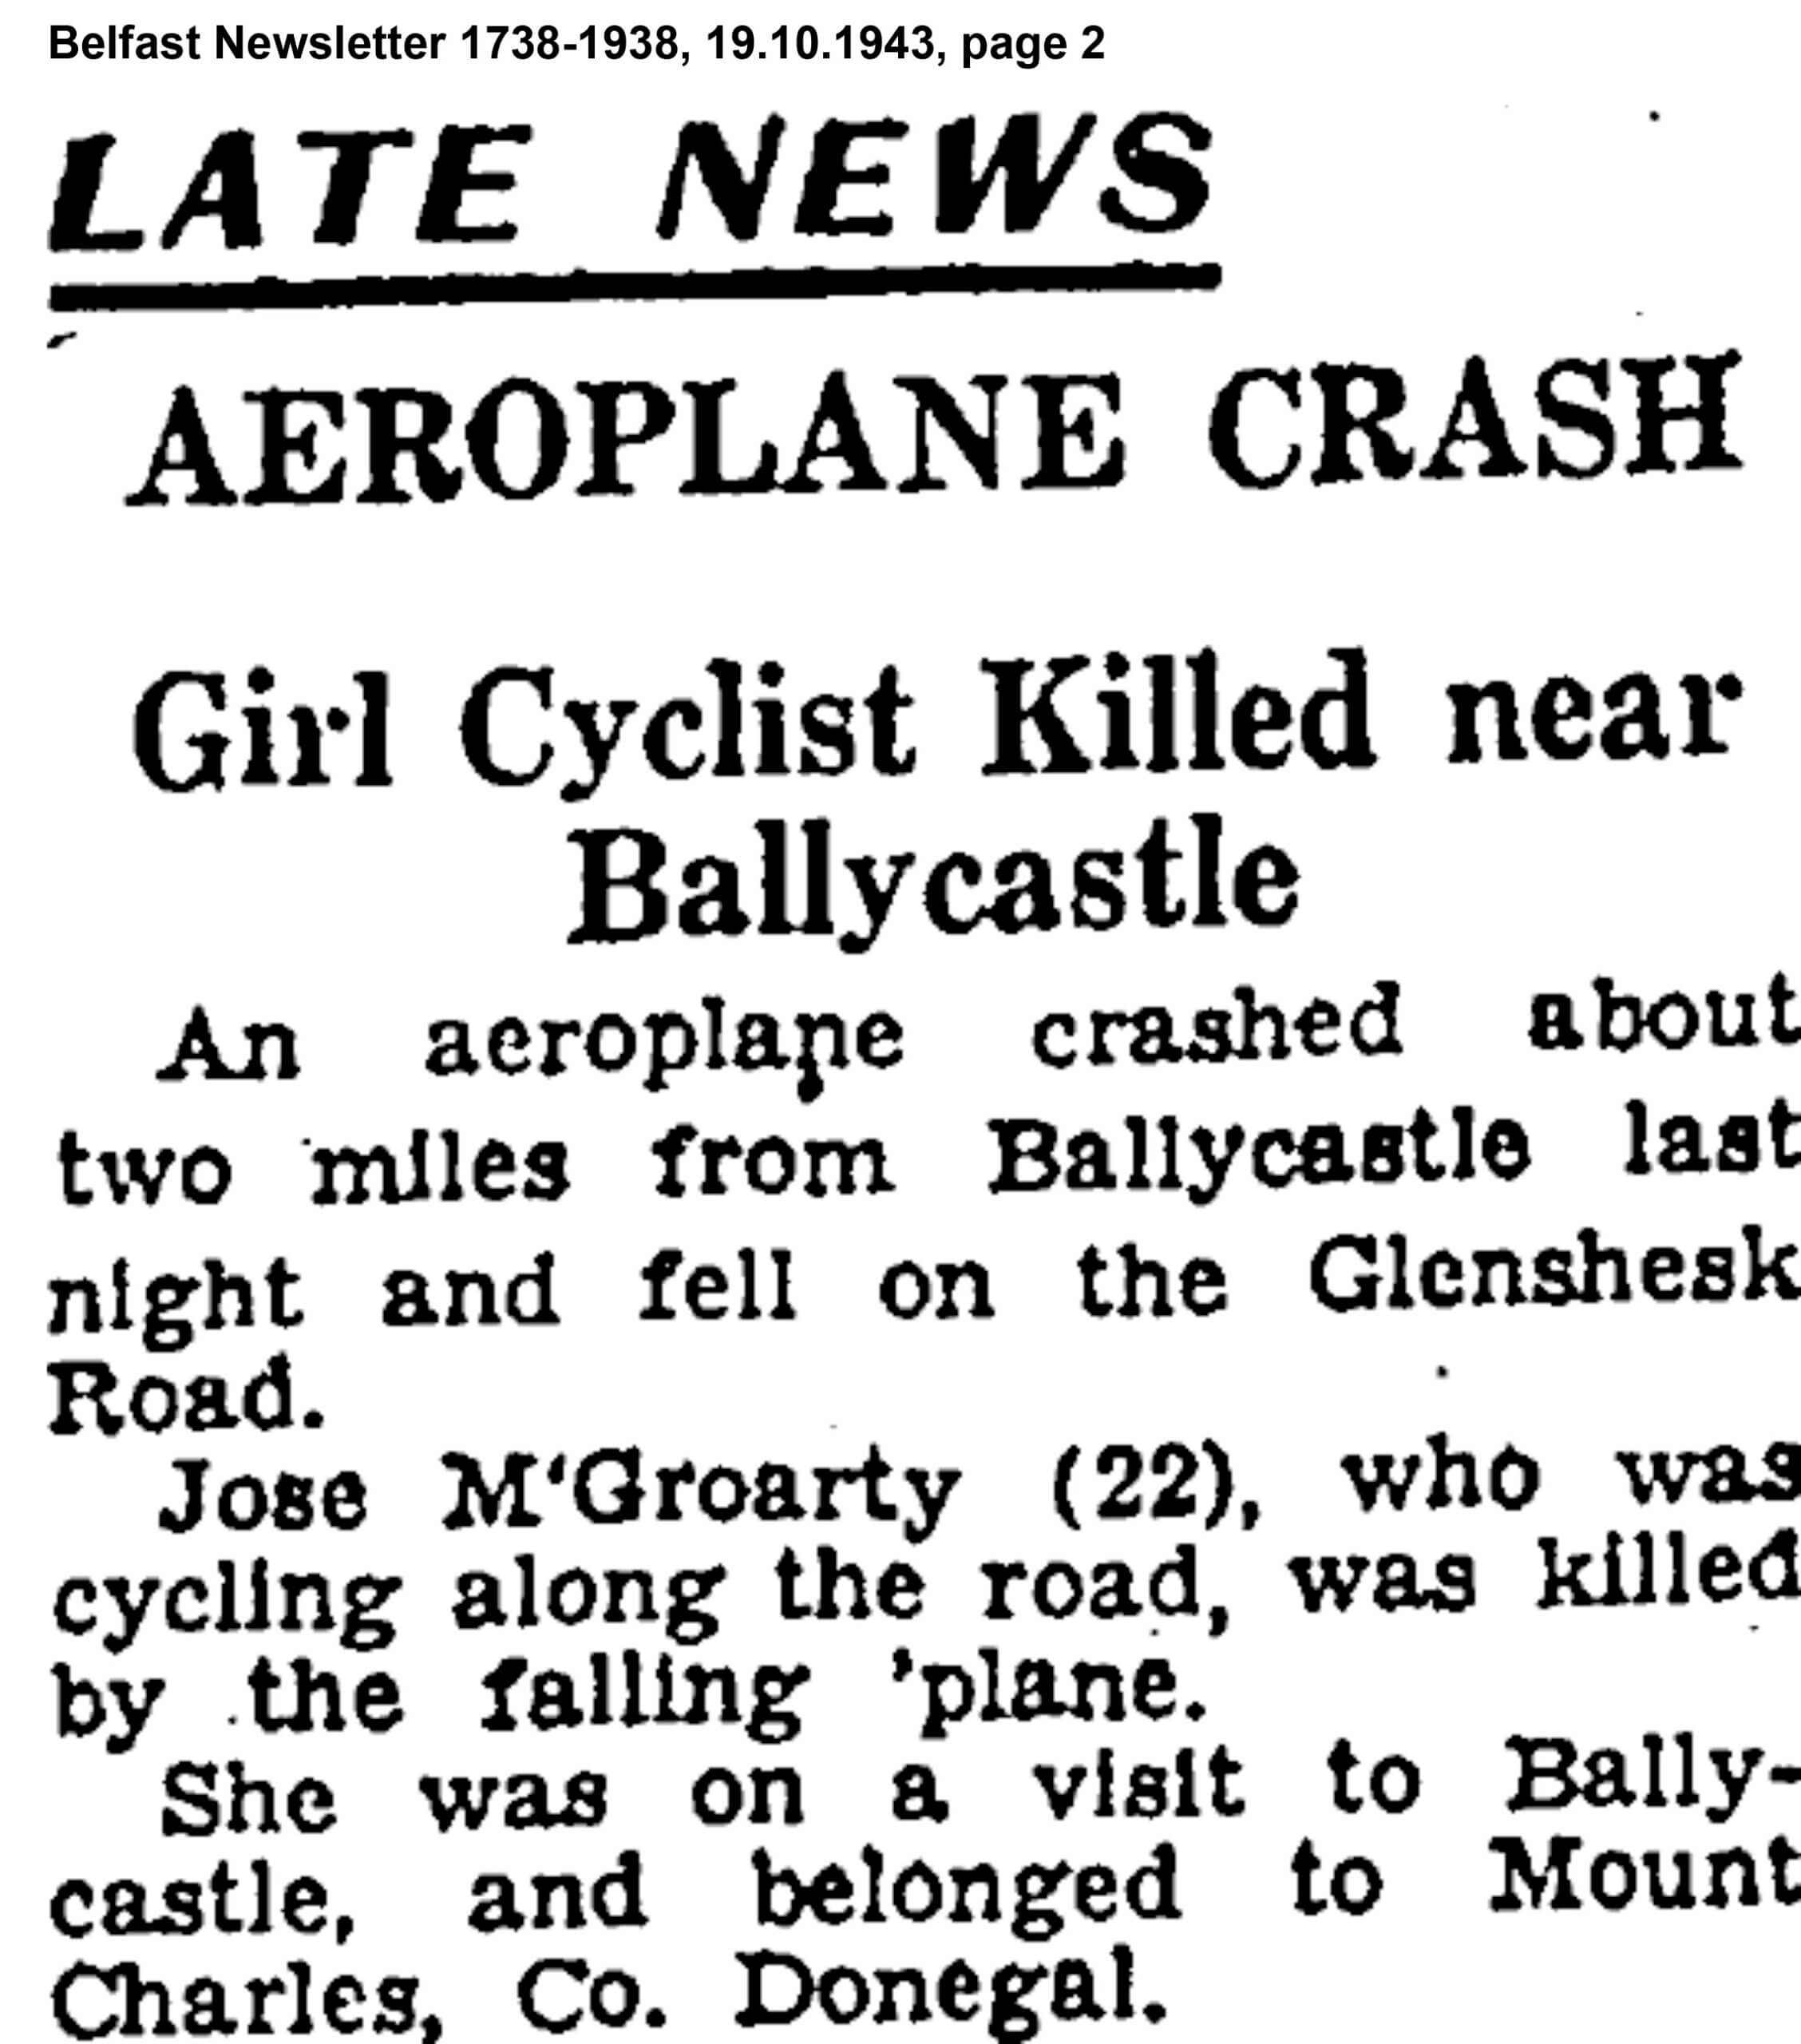 Plane Crash at Glenshesk, Ballycastle, Belfast Newsletter 1738-1938 19.10.1943 page 2